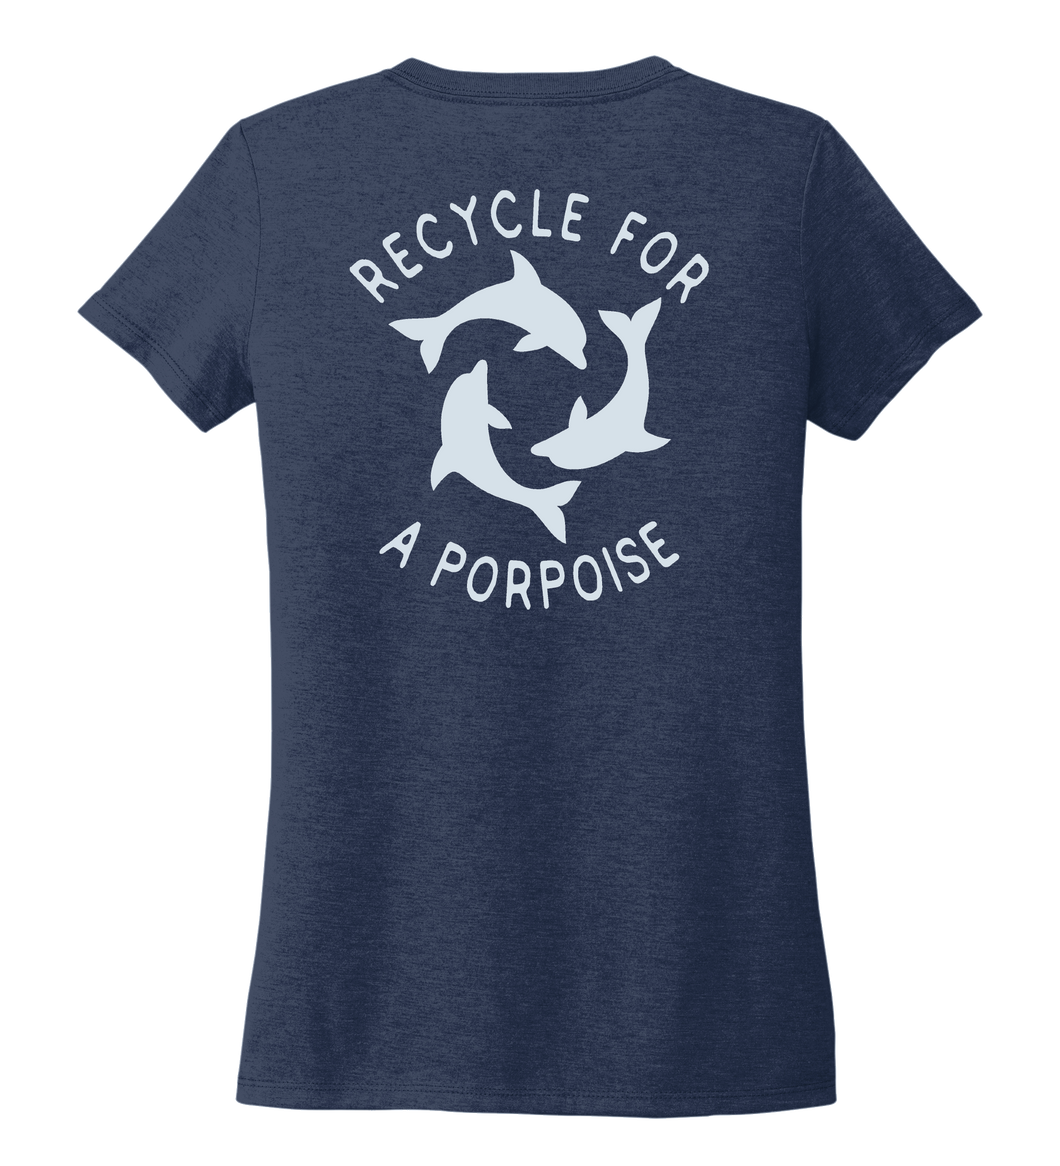 StepChange, Porpoise, Women's V-neck T-shirt in Deep Sea Blue